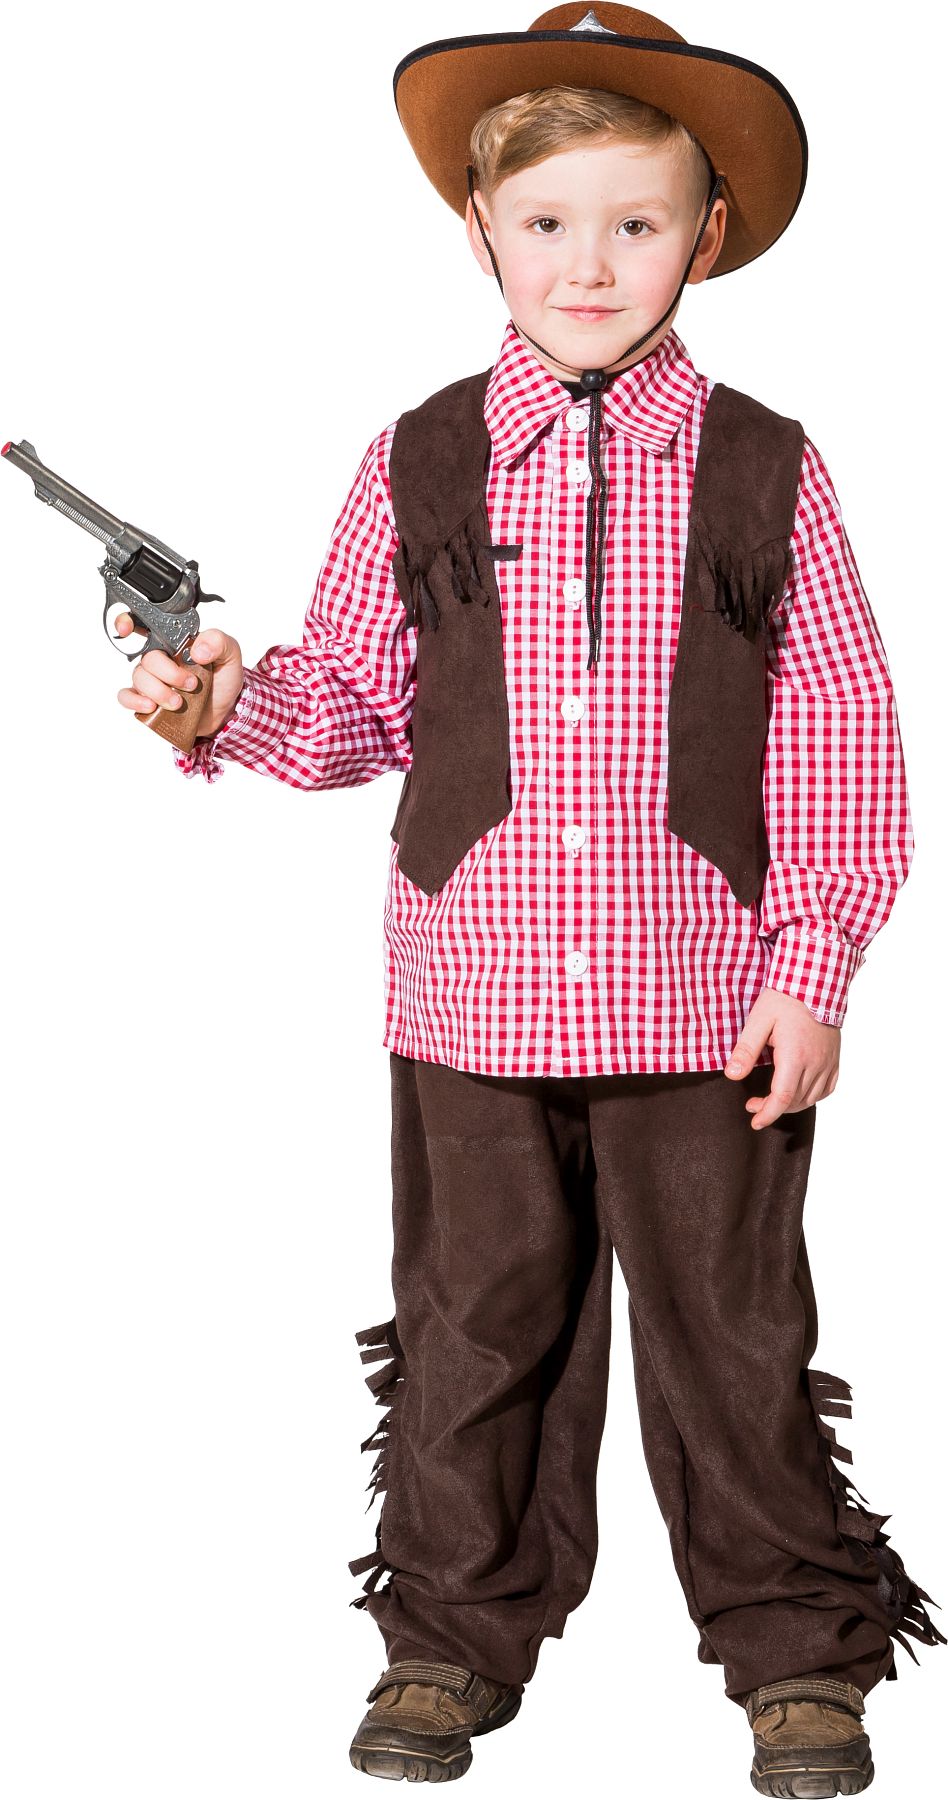 Children's costume Cowboy